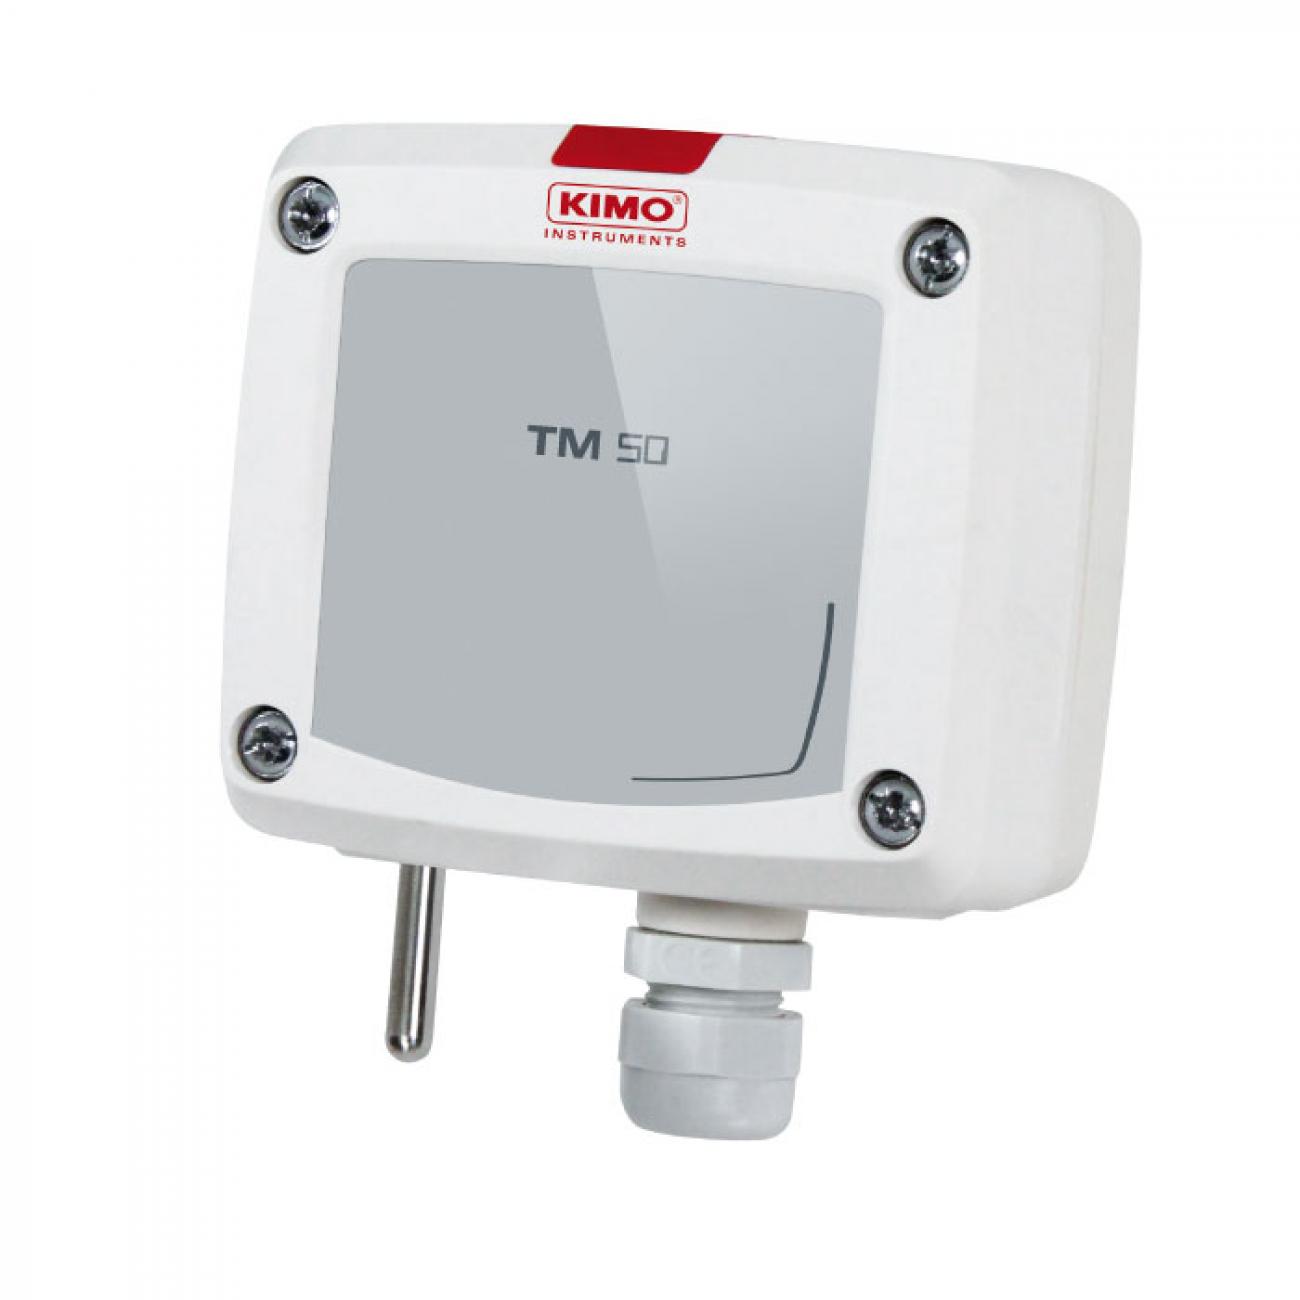 TM 50 Temperature sensor